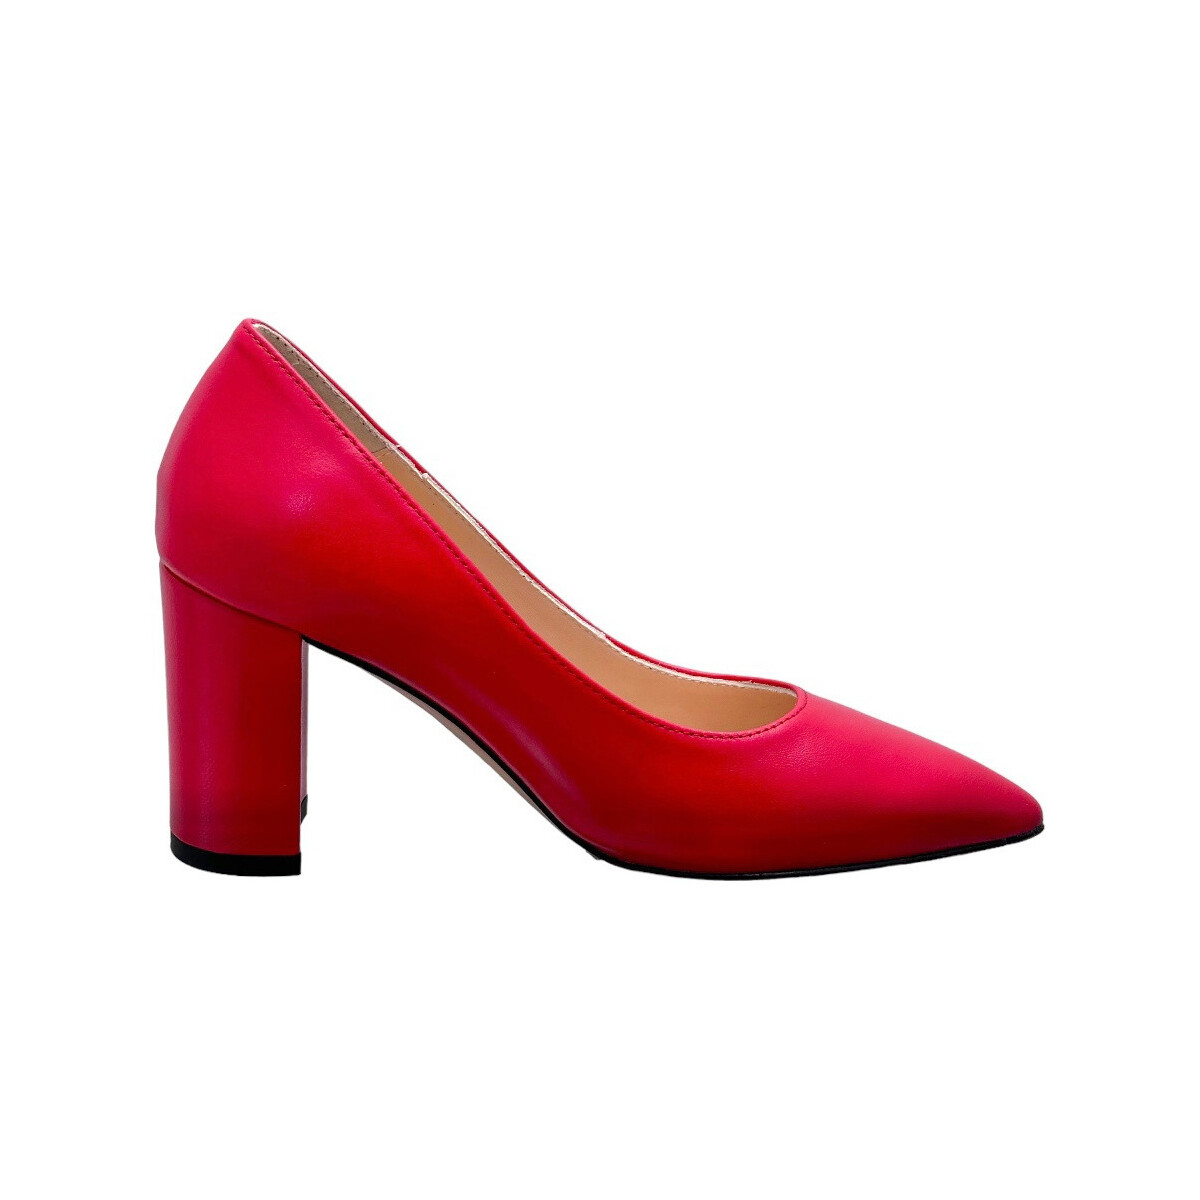 Chaussures Femme Escarpins Melluso SHOZ527ro Rouge